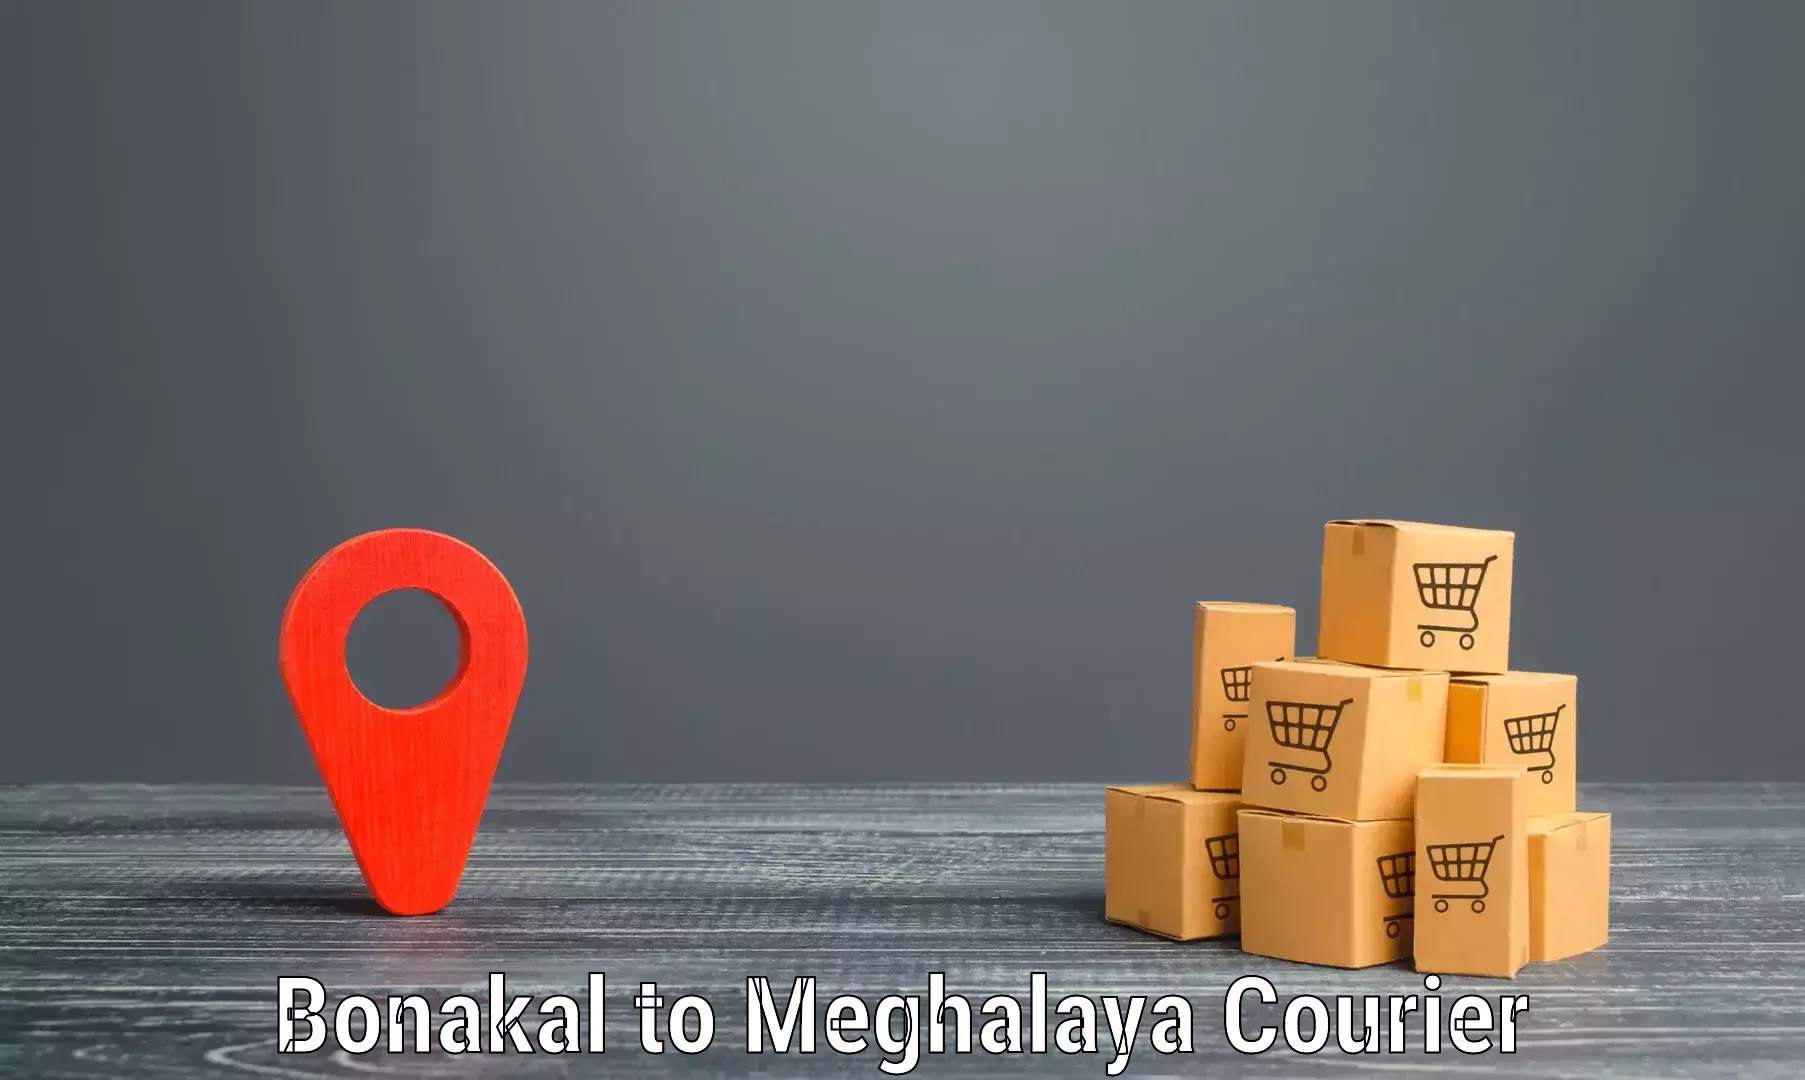 Urban courier service Bonakal to Shillong